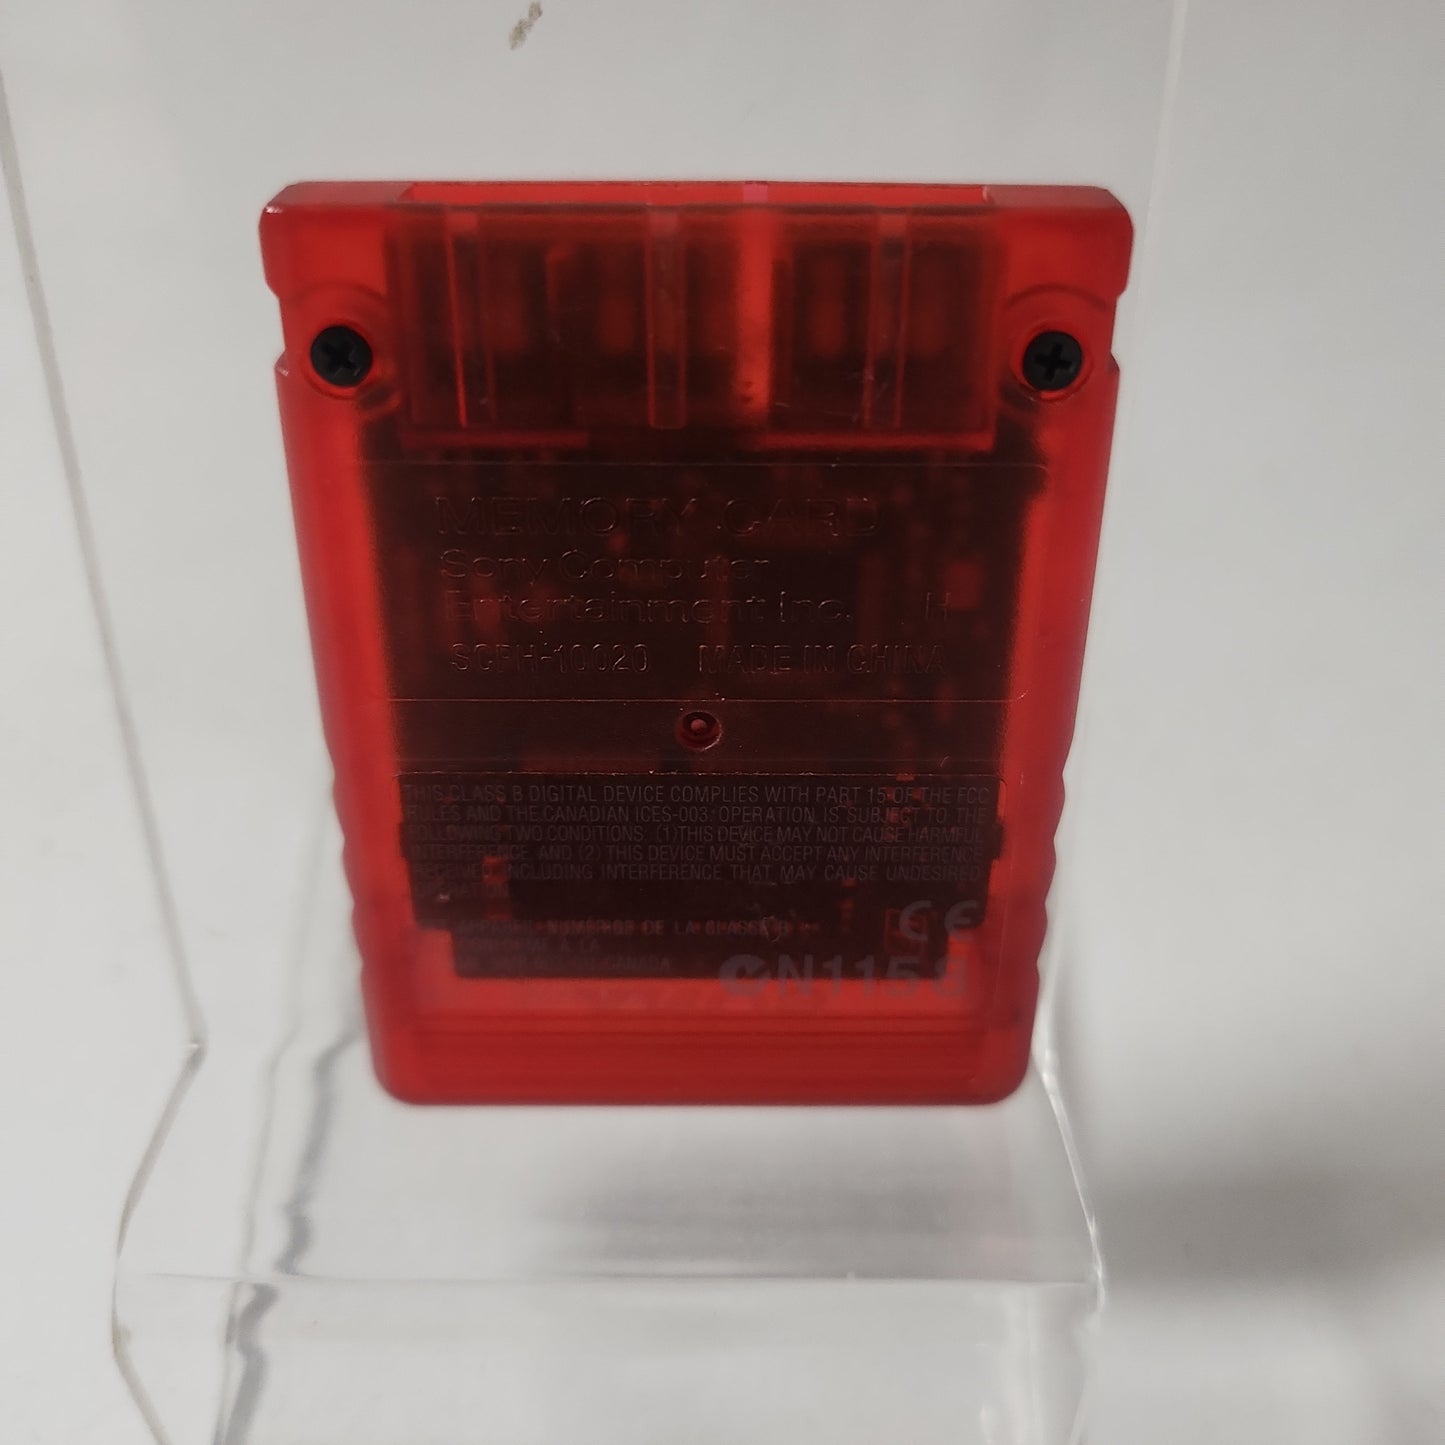 Doorzichtige Rode 8MB Memorycard Playstation 2